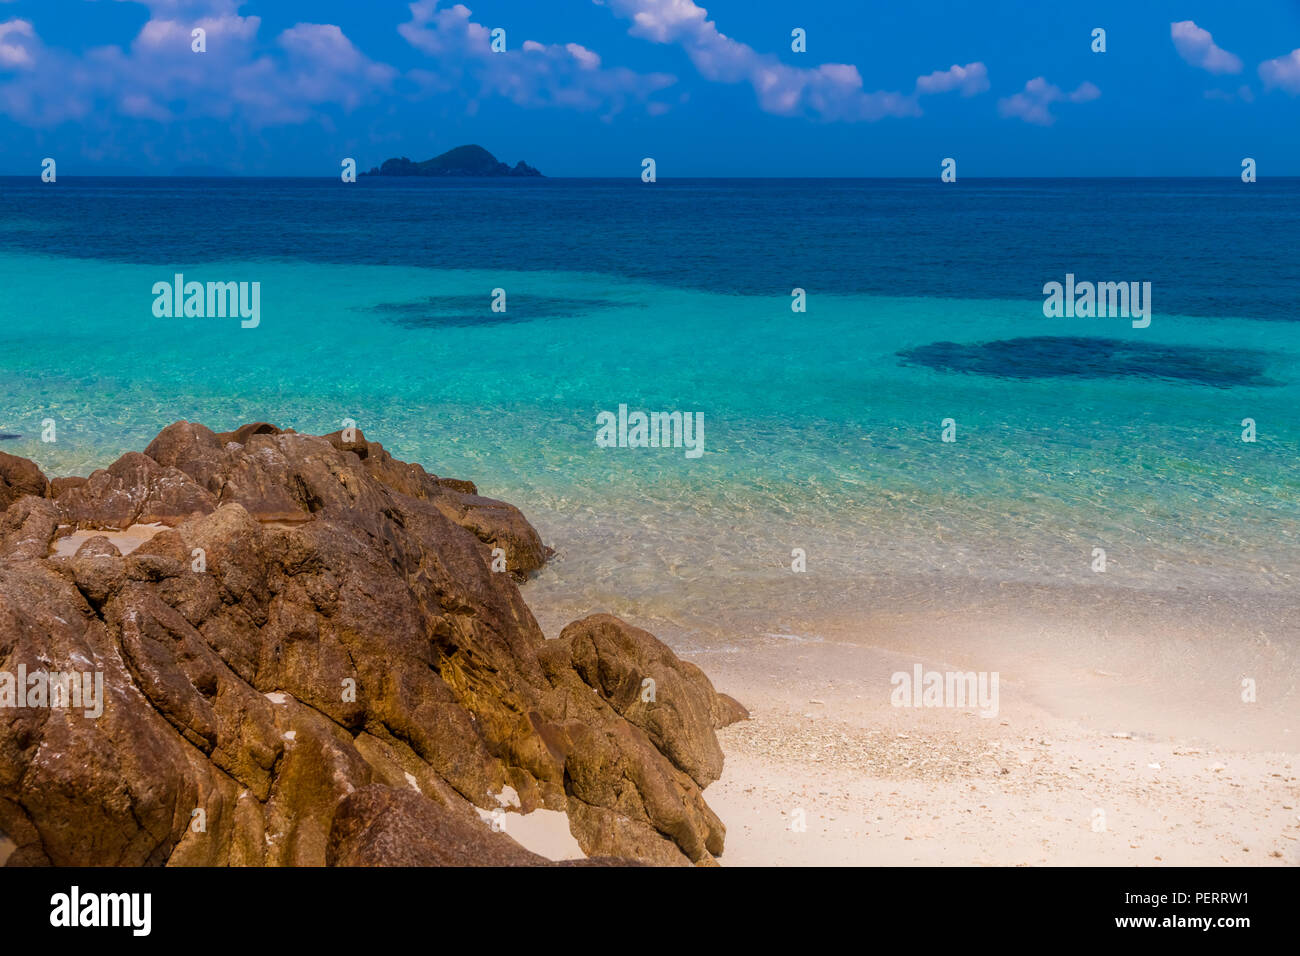 Beau paysage de la mer bleu turquoise, le sable blanc poudreux et la roche tendre la main à l'eau claire peu profonde en face de Rawa scintillant... Banque D'Images